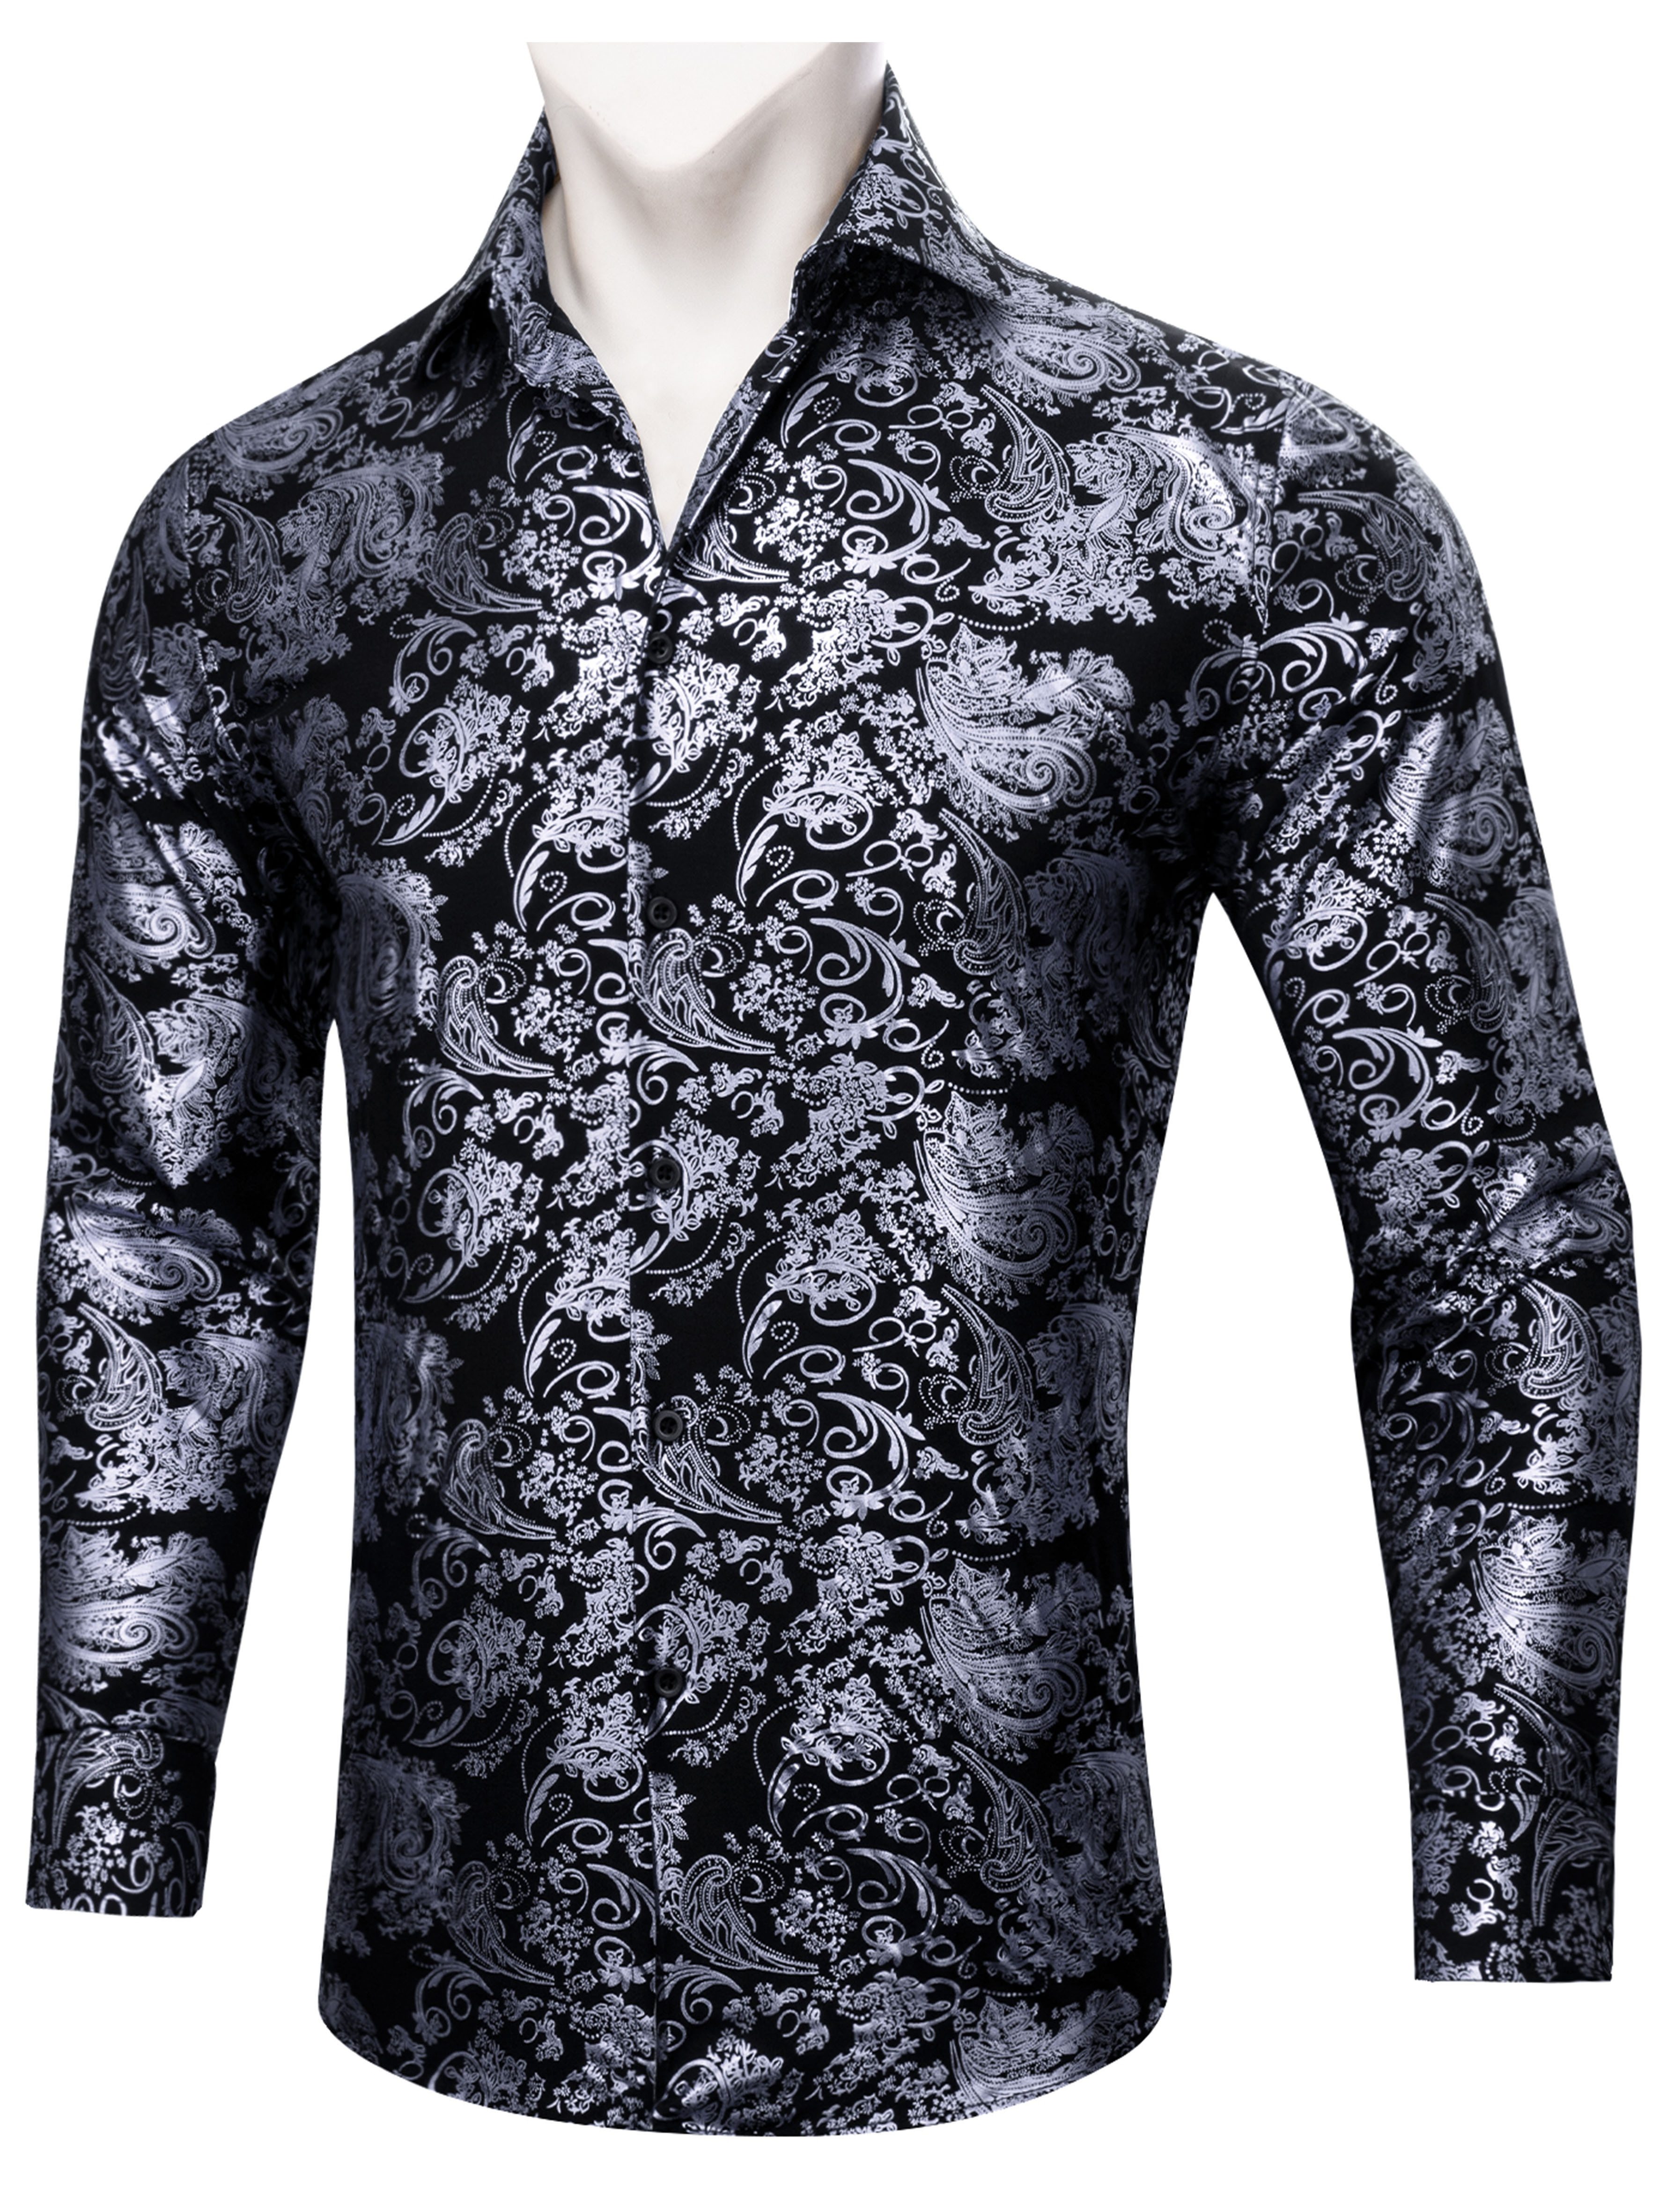 Jacquard Long Sleeve Men Business Shirt. Plus Size Clothes Online Shop  Singapore - Large Size Clothing Shop